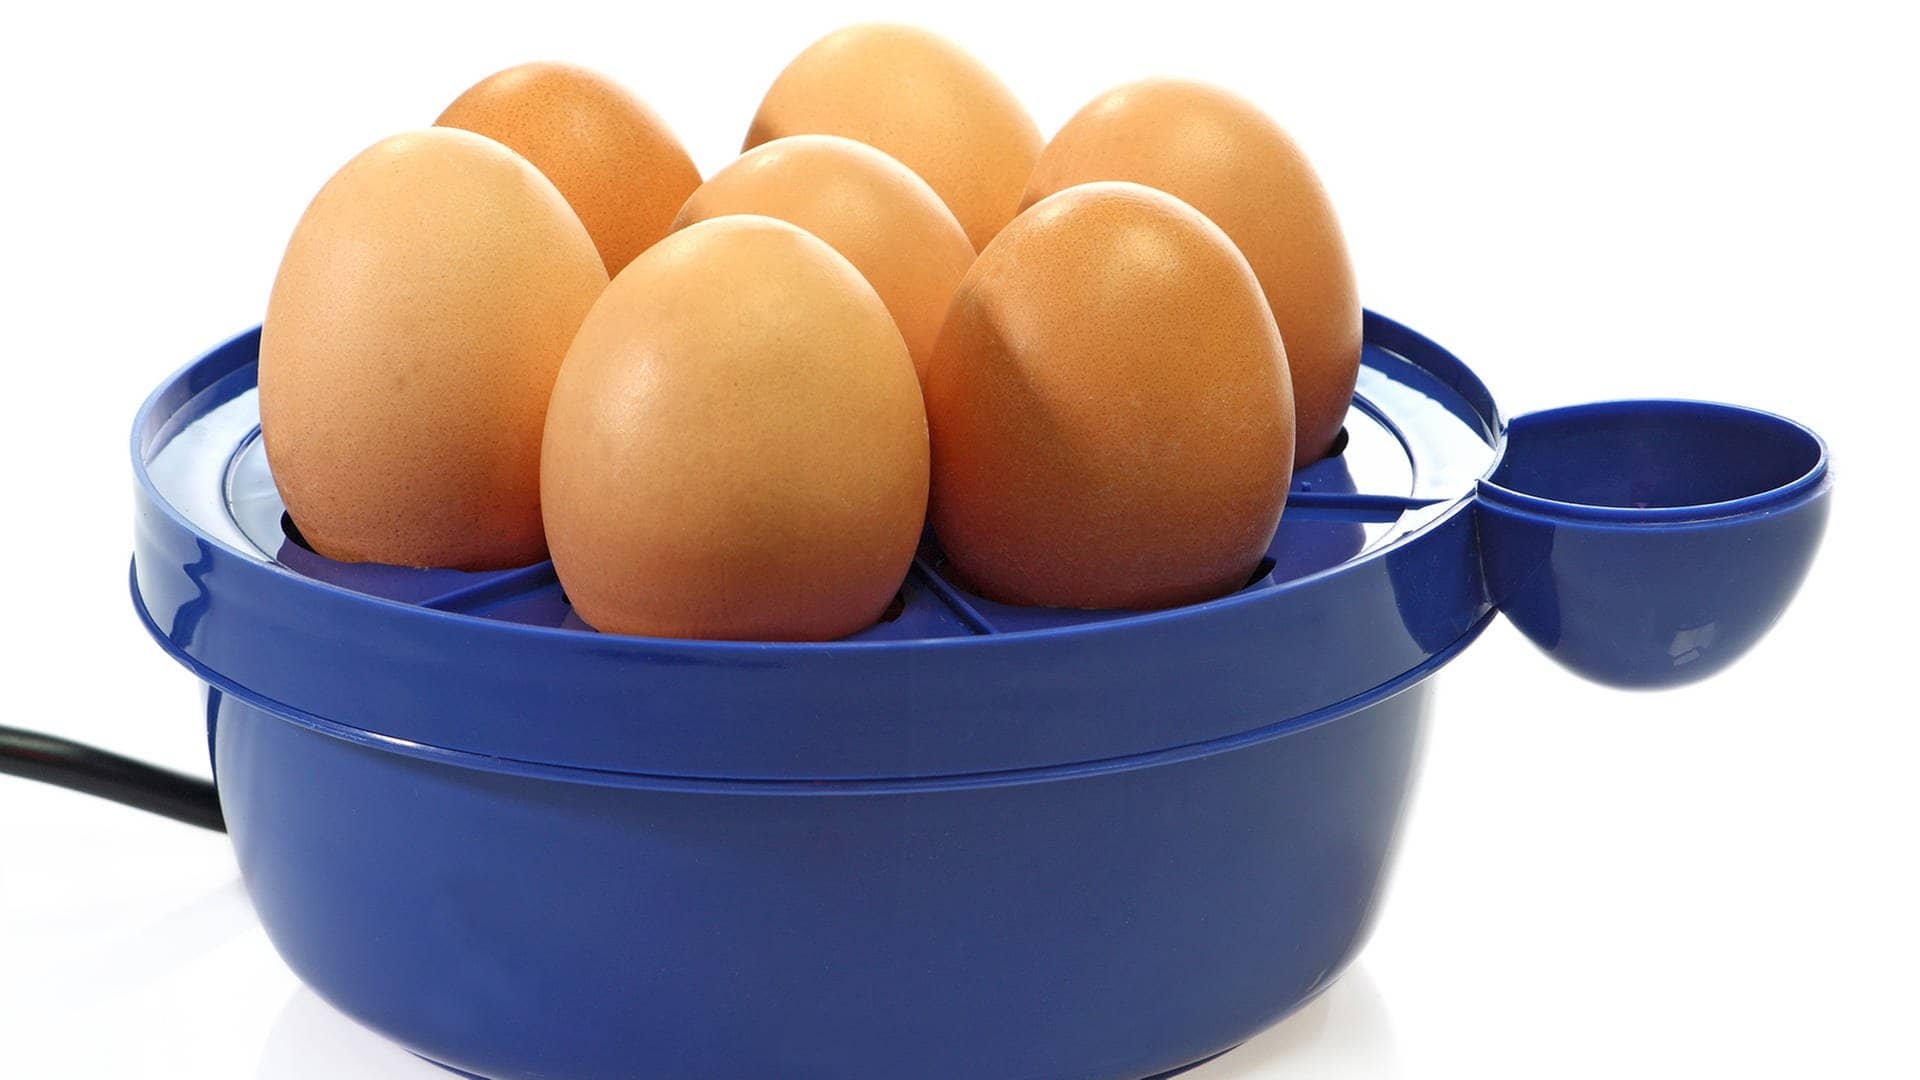 Blauer Eierkocher mit 7 Eiern  (Foto: Adobe Stock / Birgit Reitz-Hofmann)